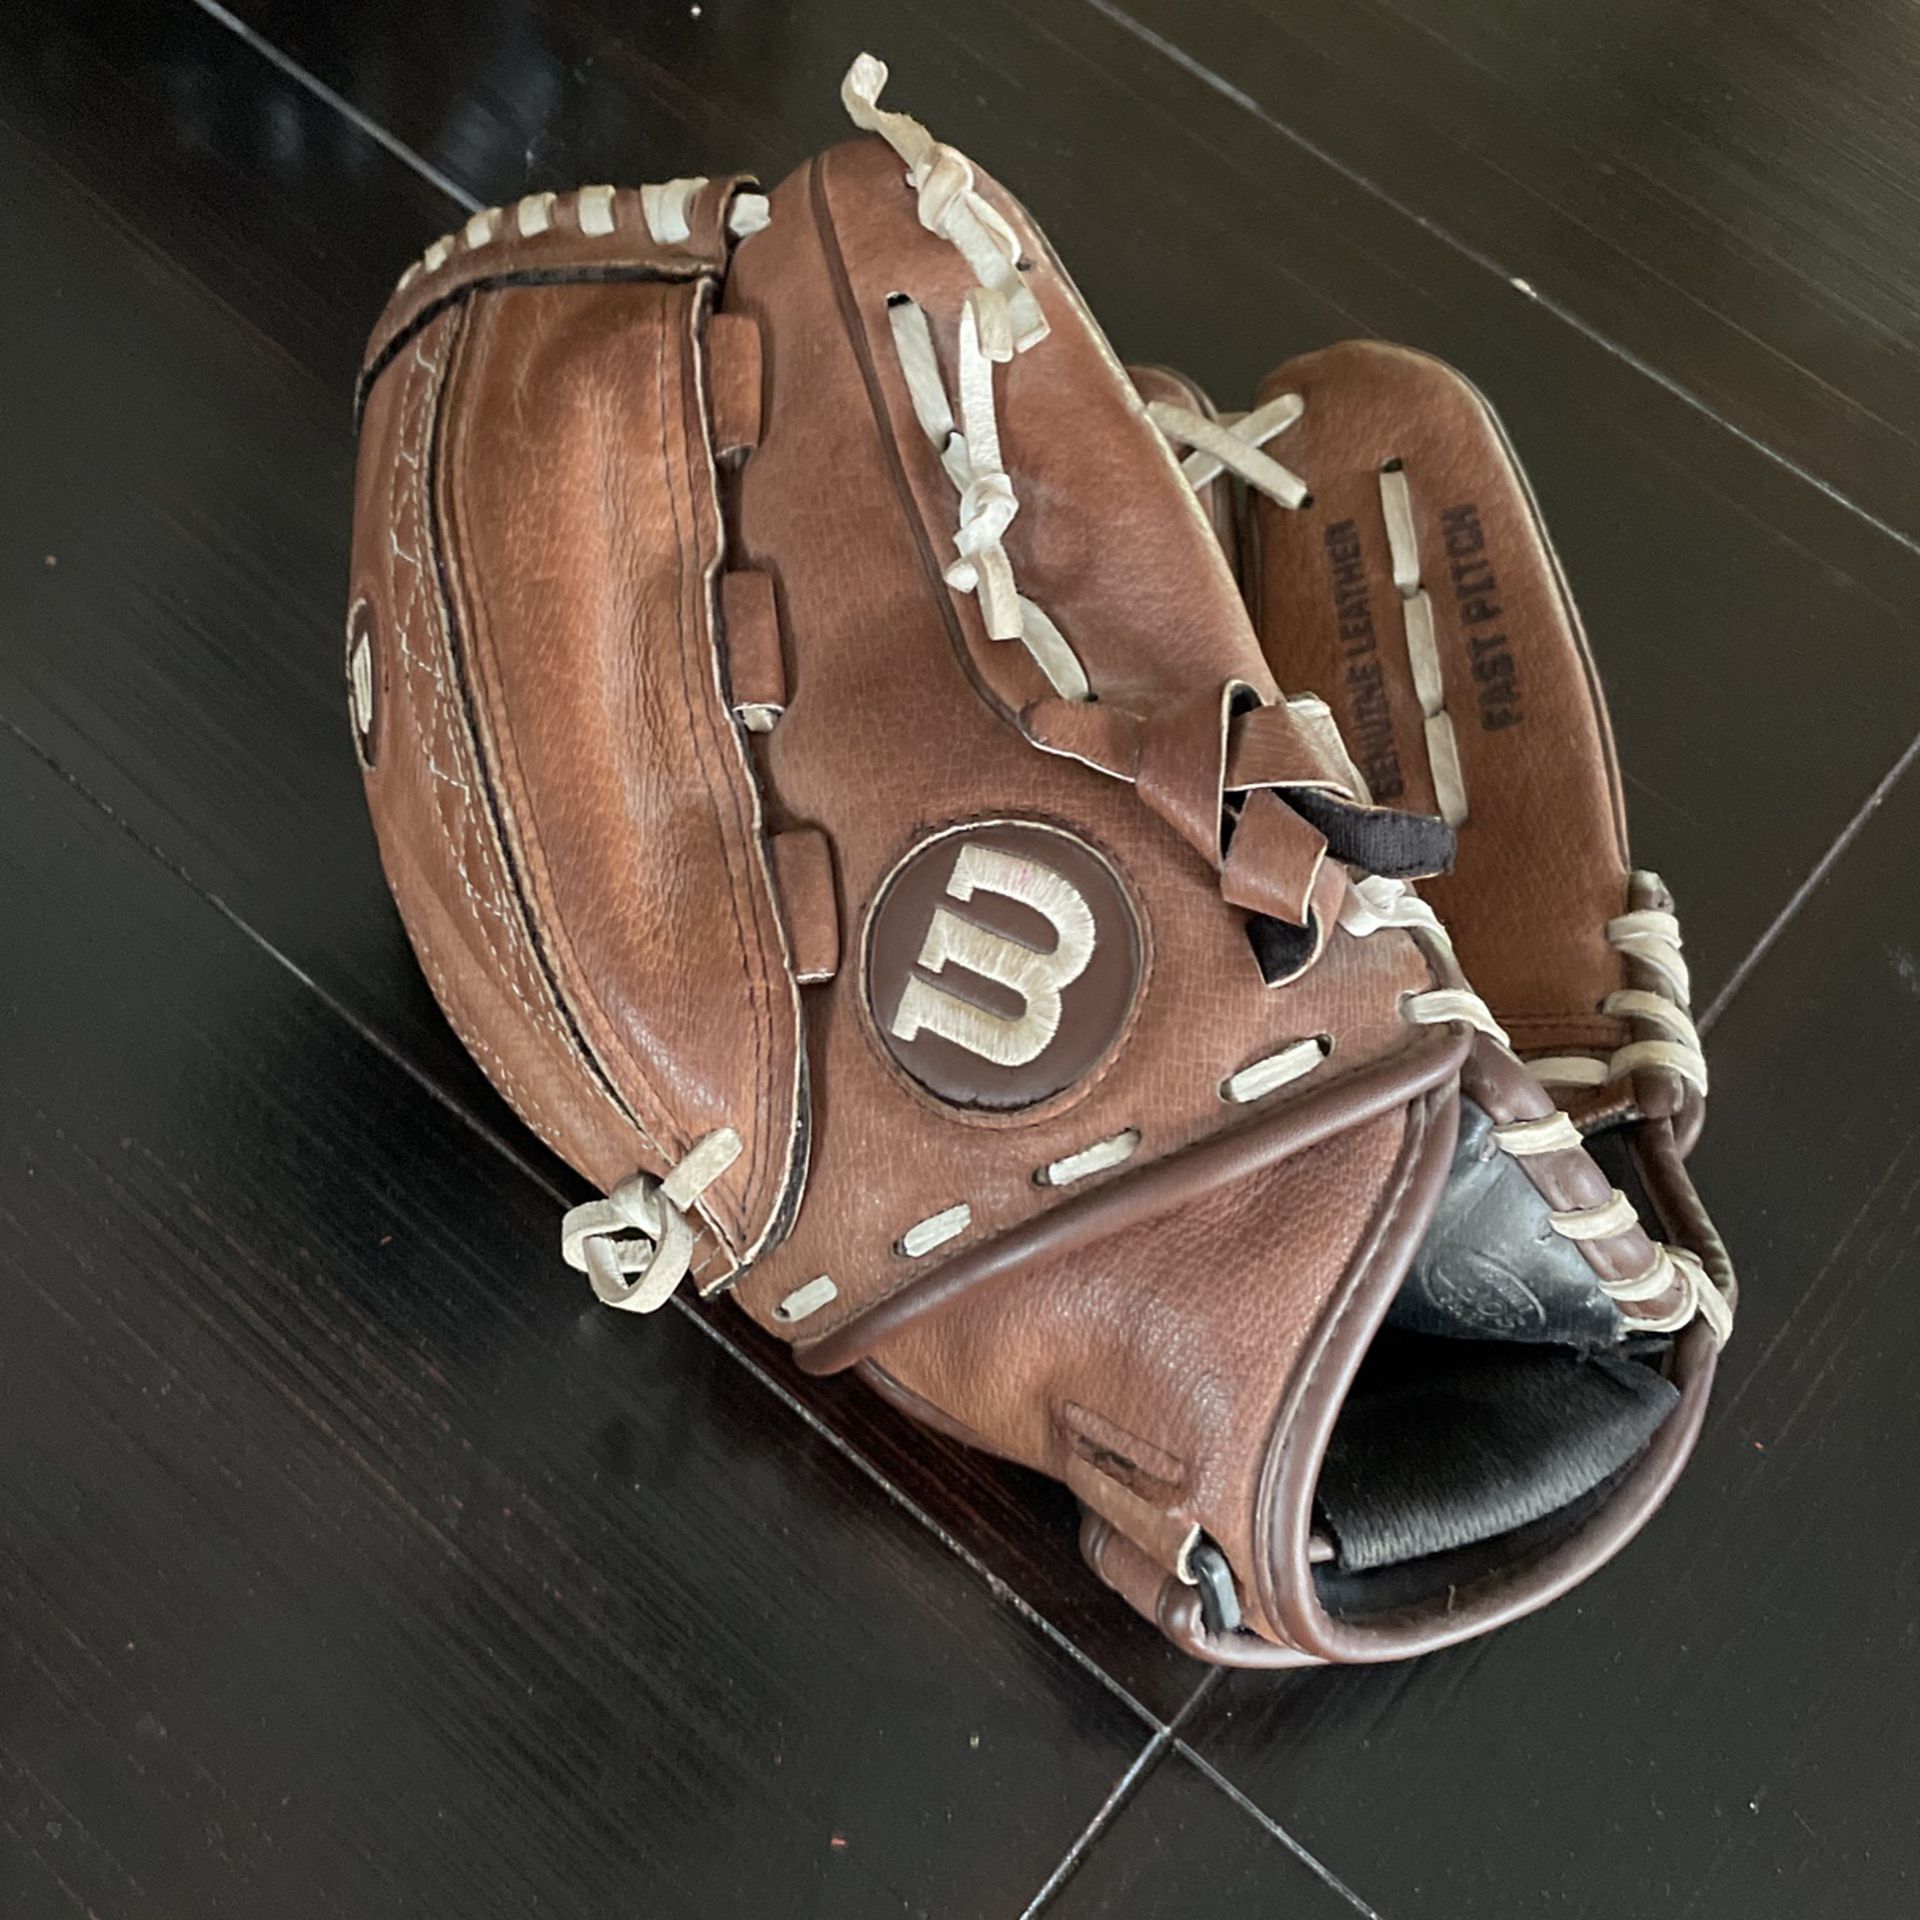 Little League Softball Glove